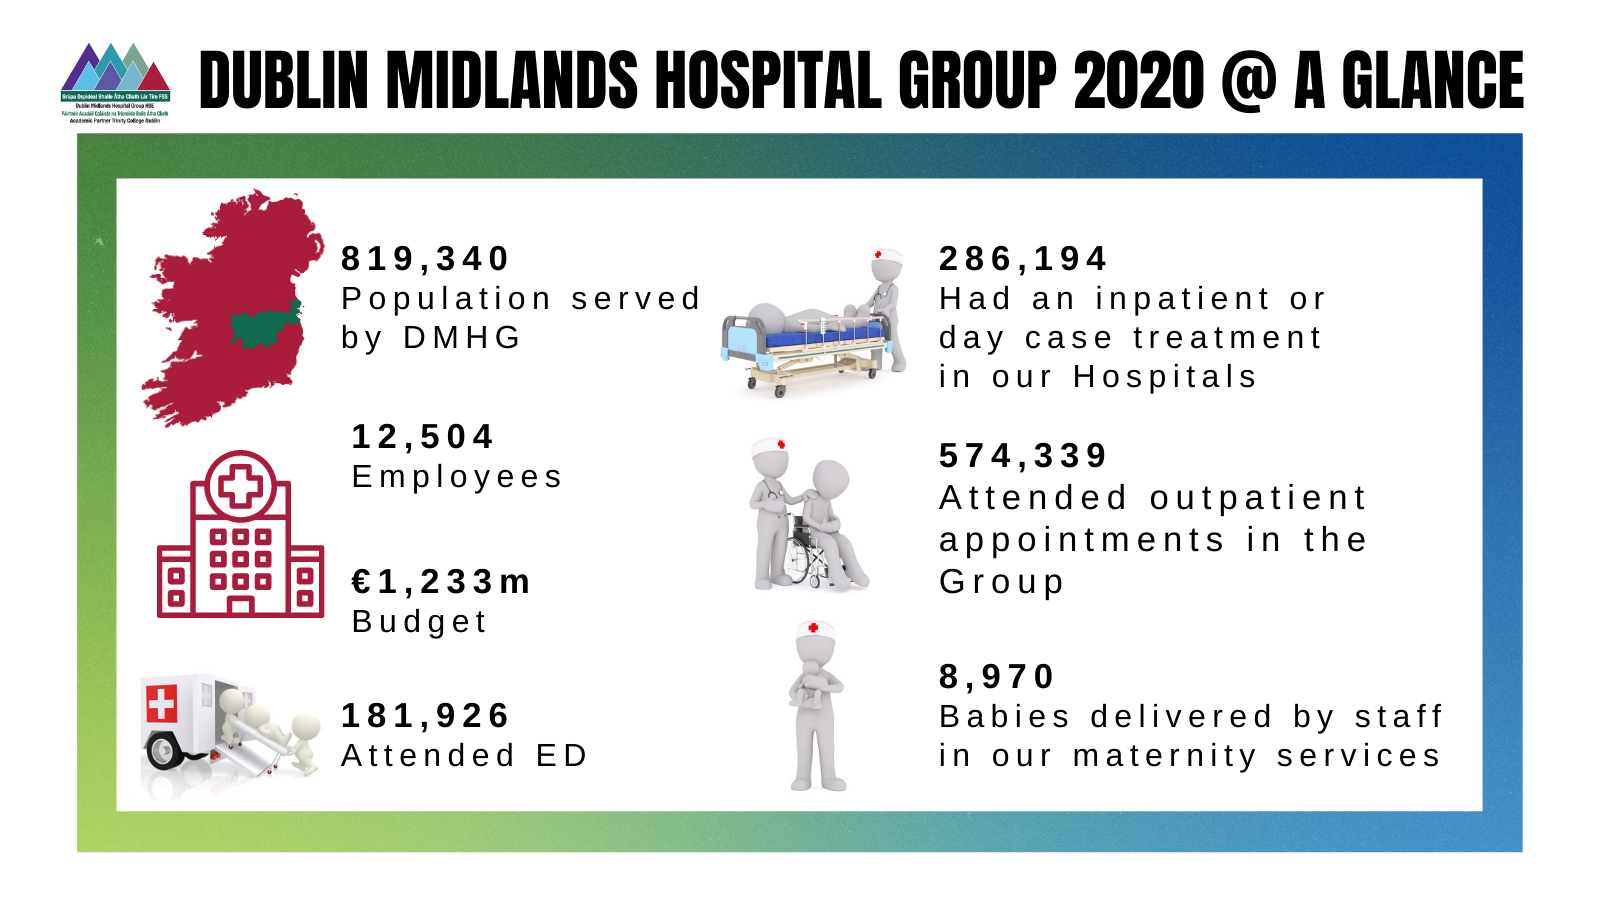 Dublin Midlands Hospital group 2020 at a glance